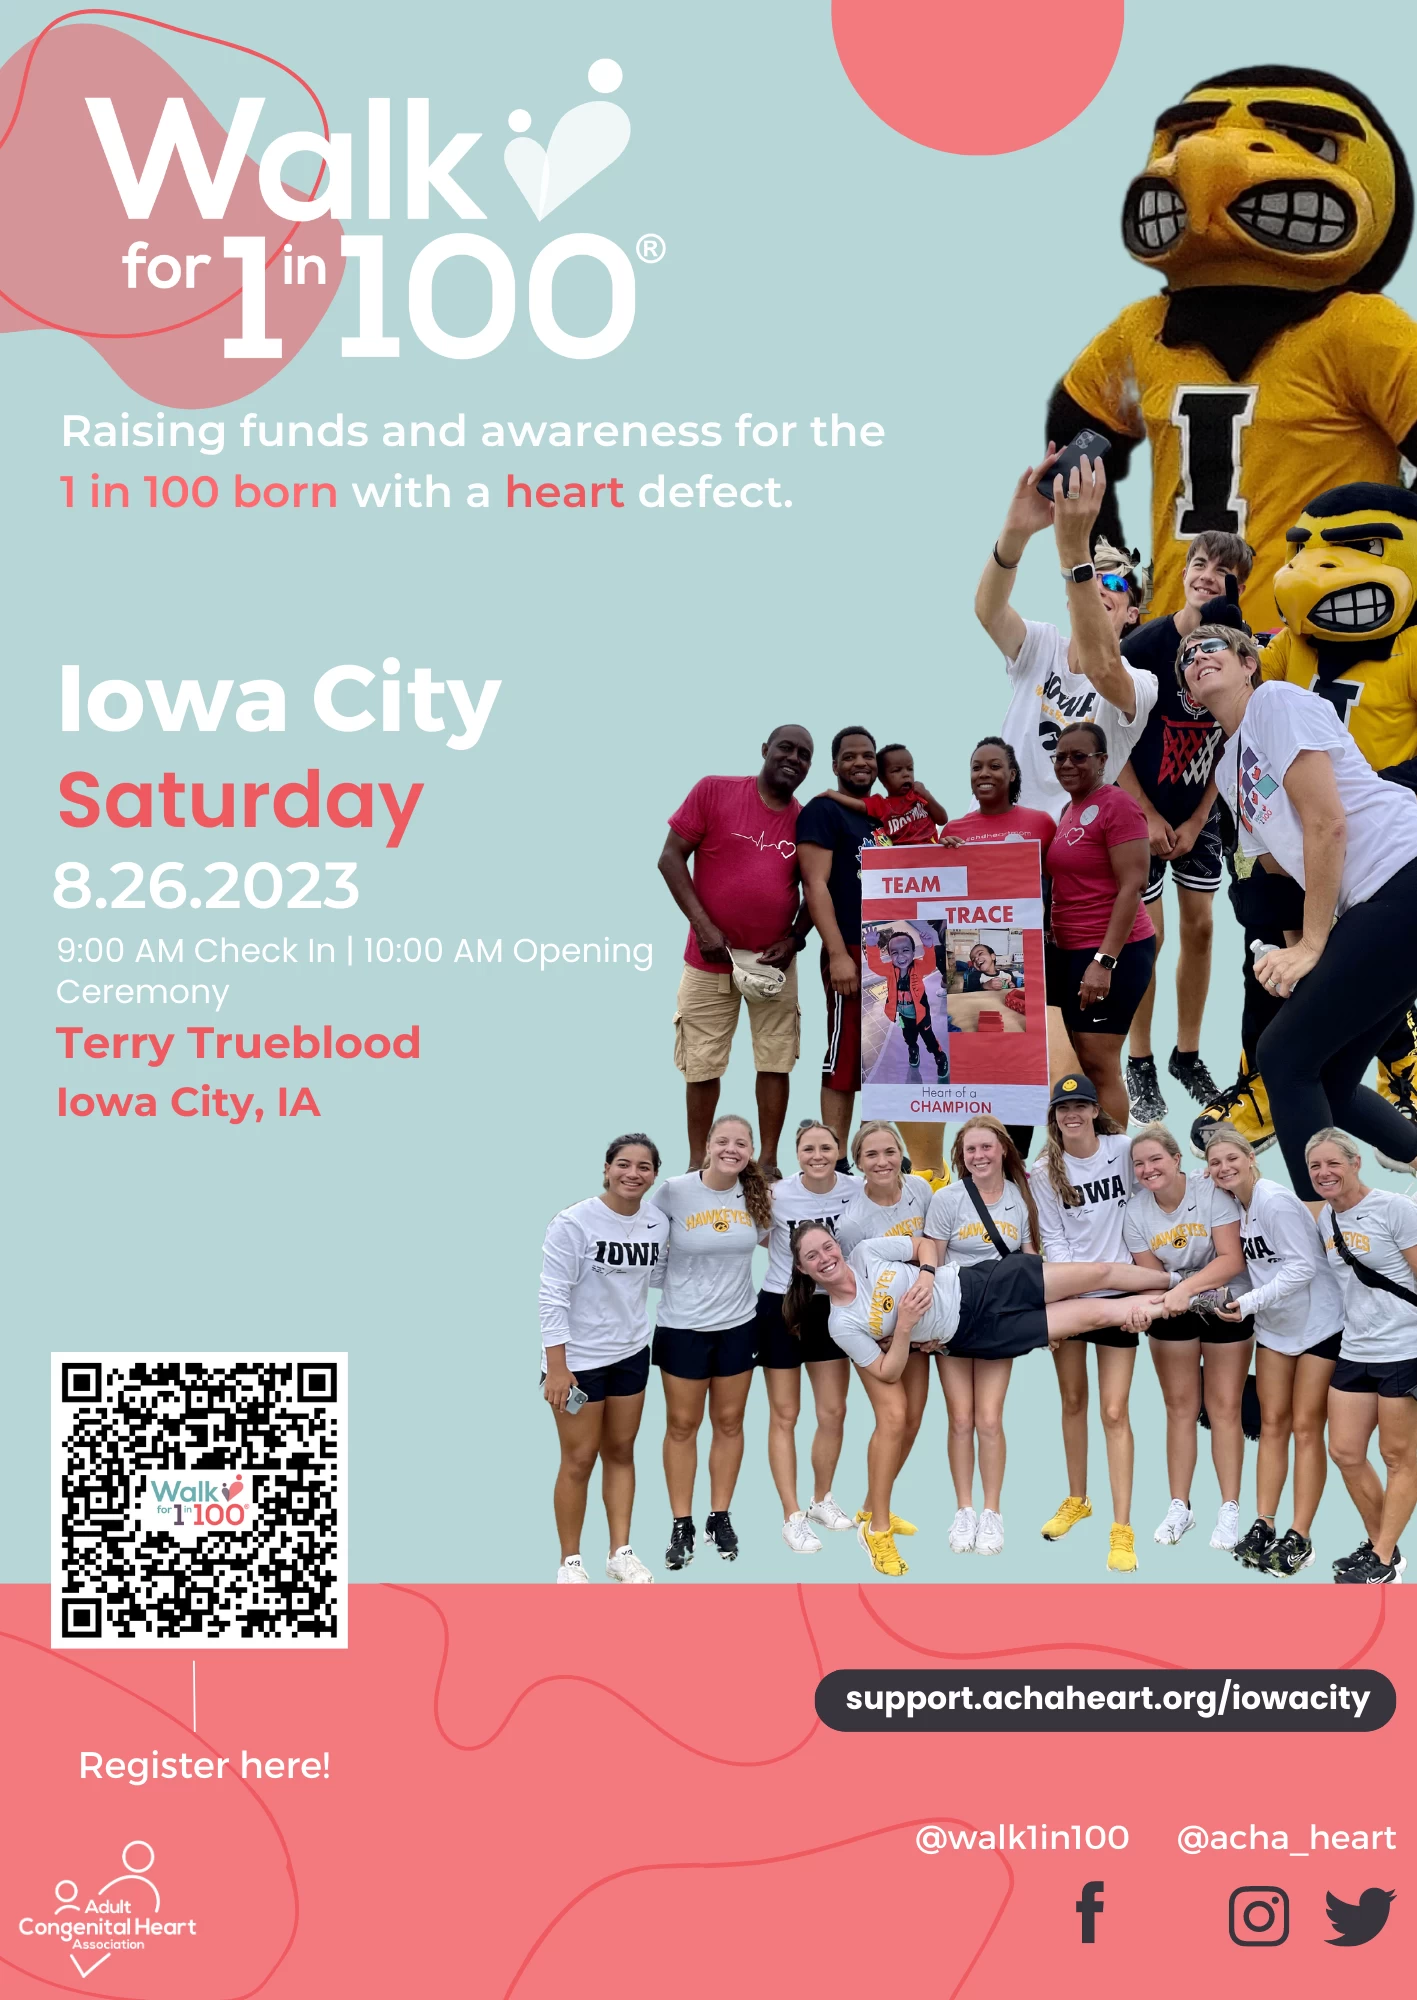 Iowa City Walk for 1 in 100